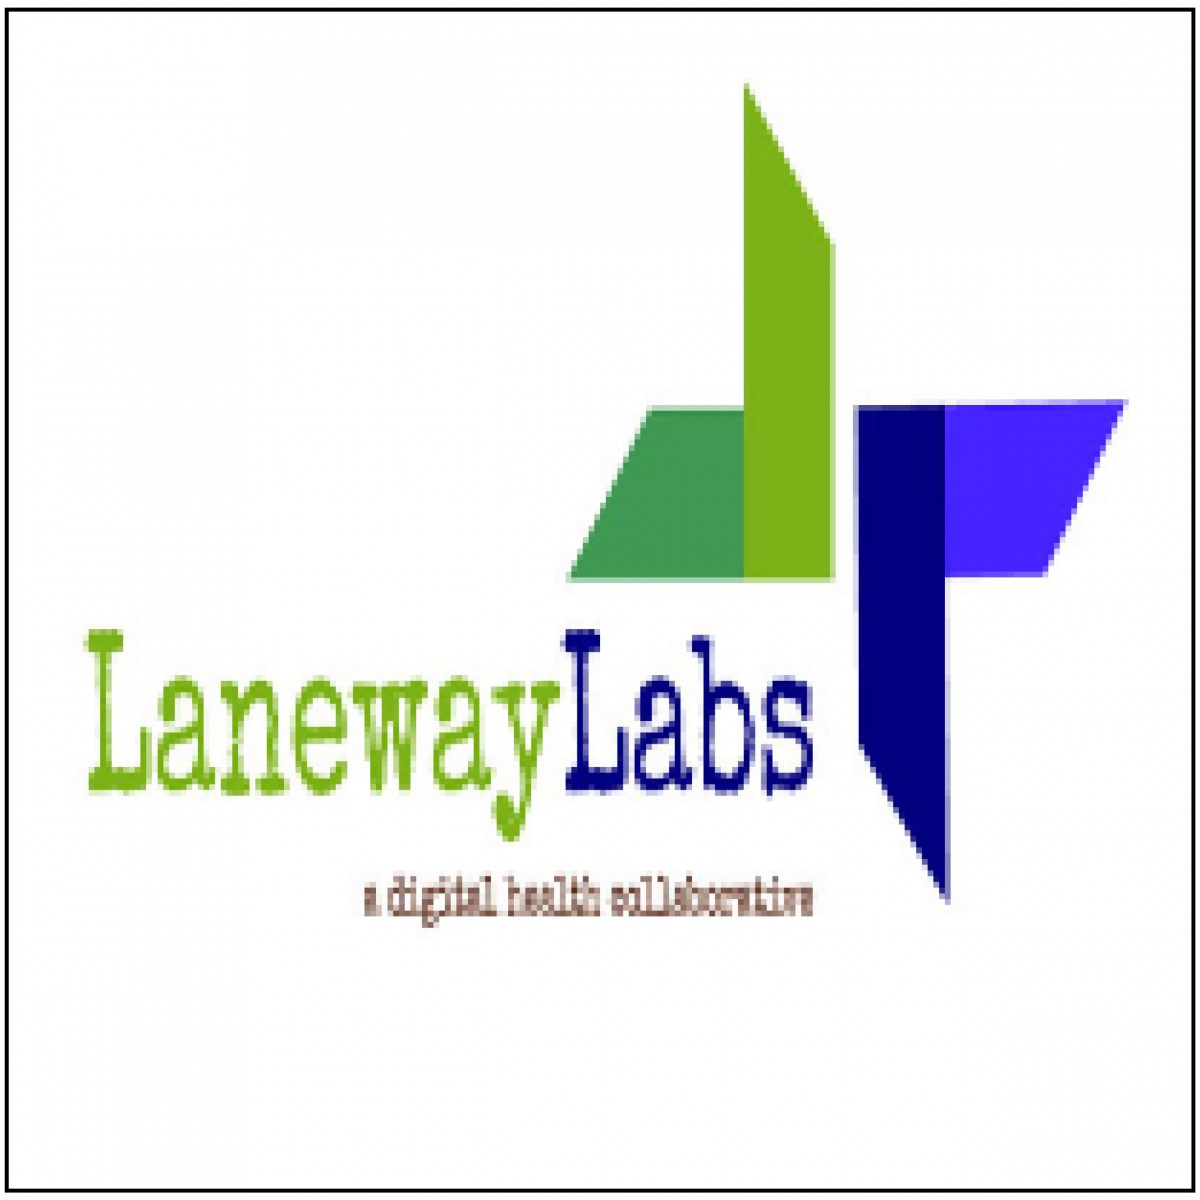 Laneway Labs